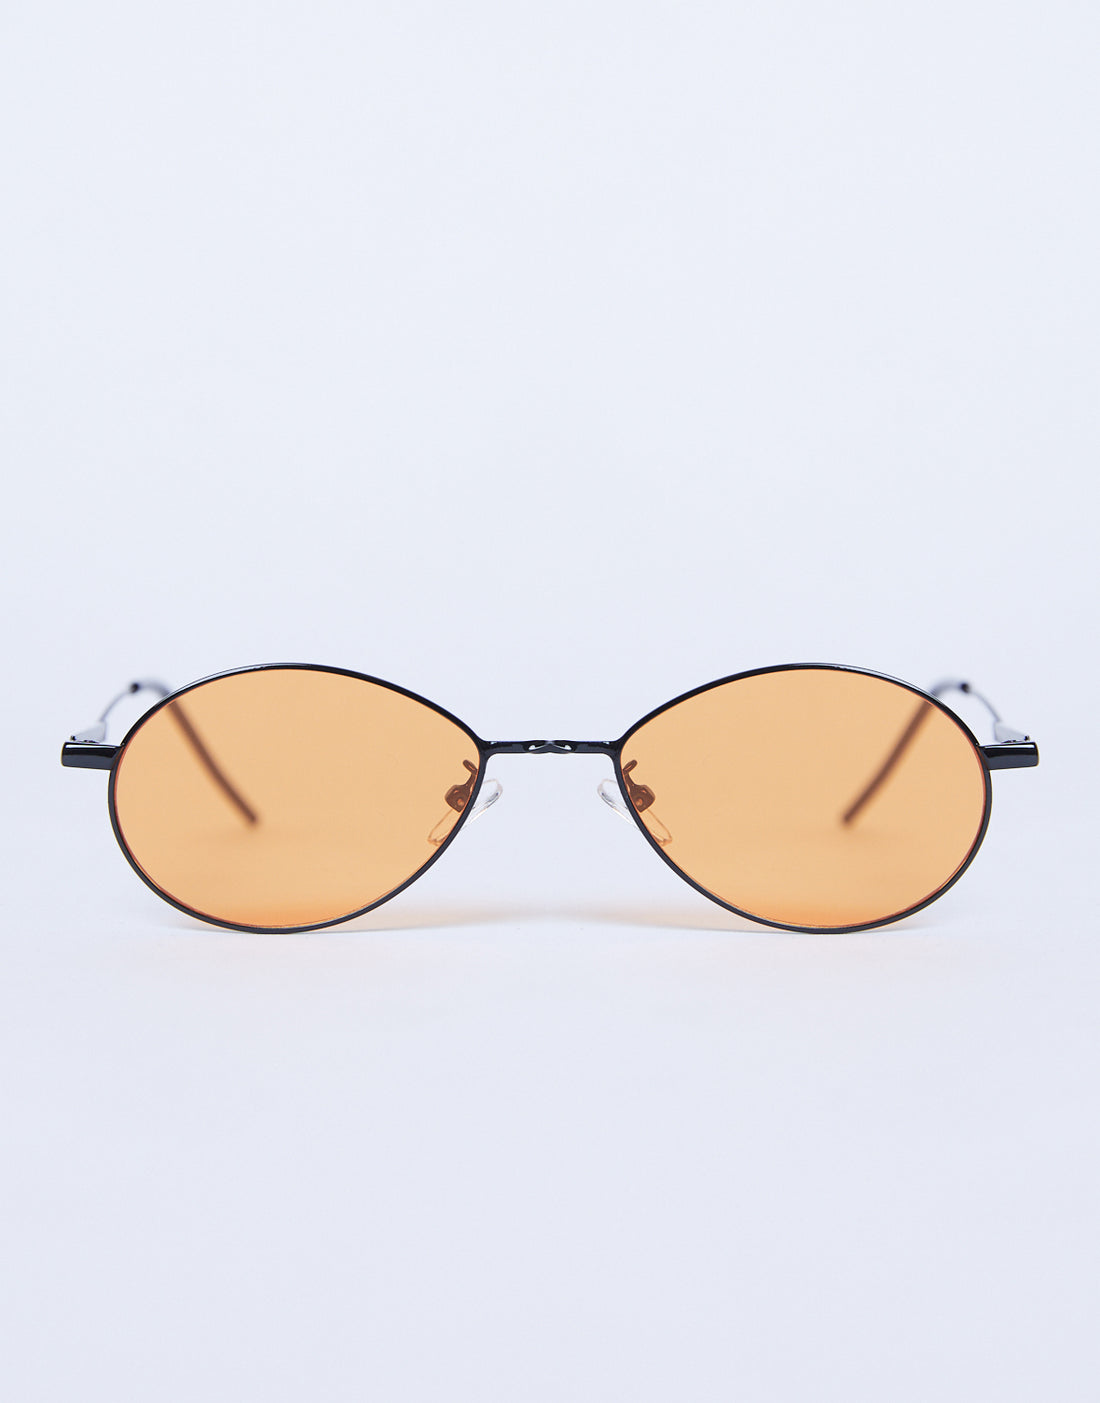 Retro Days Colored Sunglasses Accessories Orange One Size -2020AVE